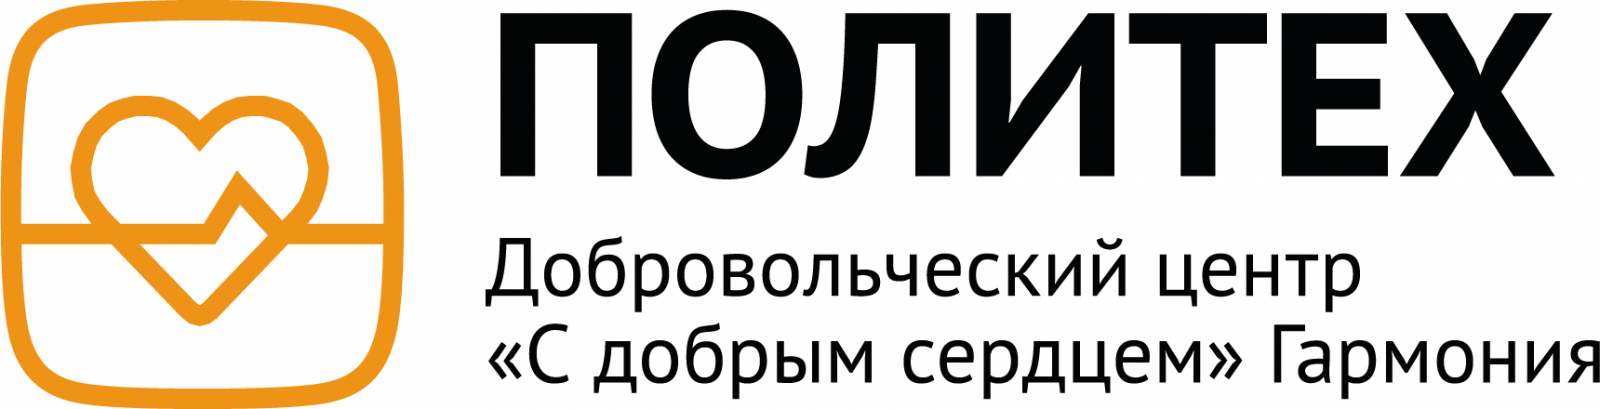 Логотип ЦМП Основная версия